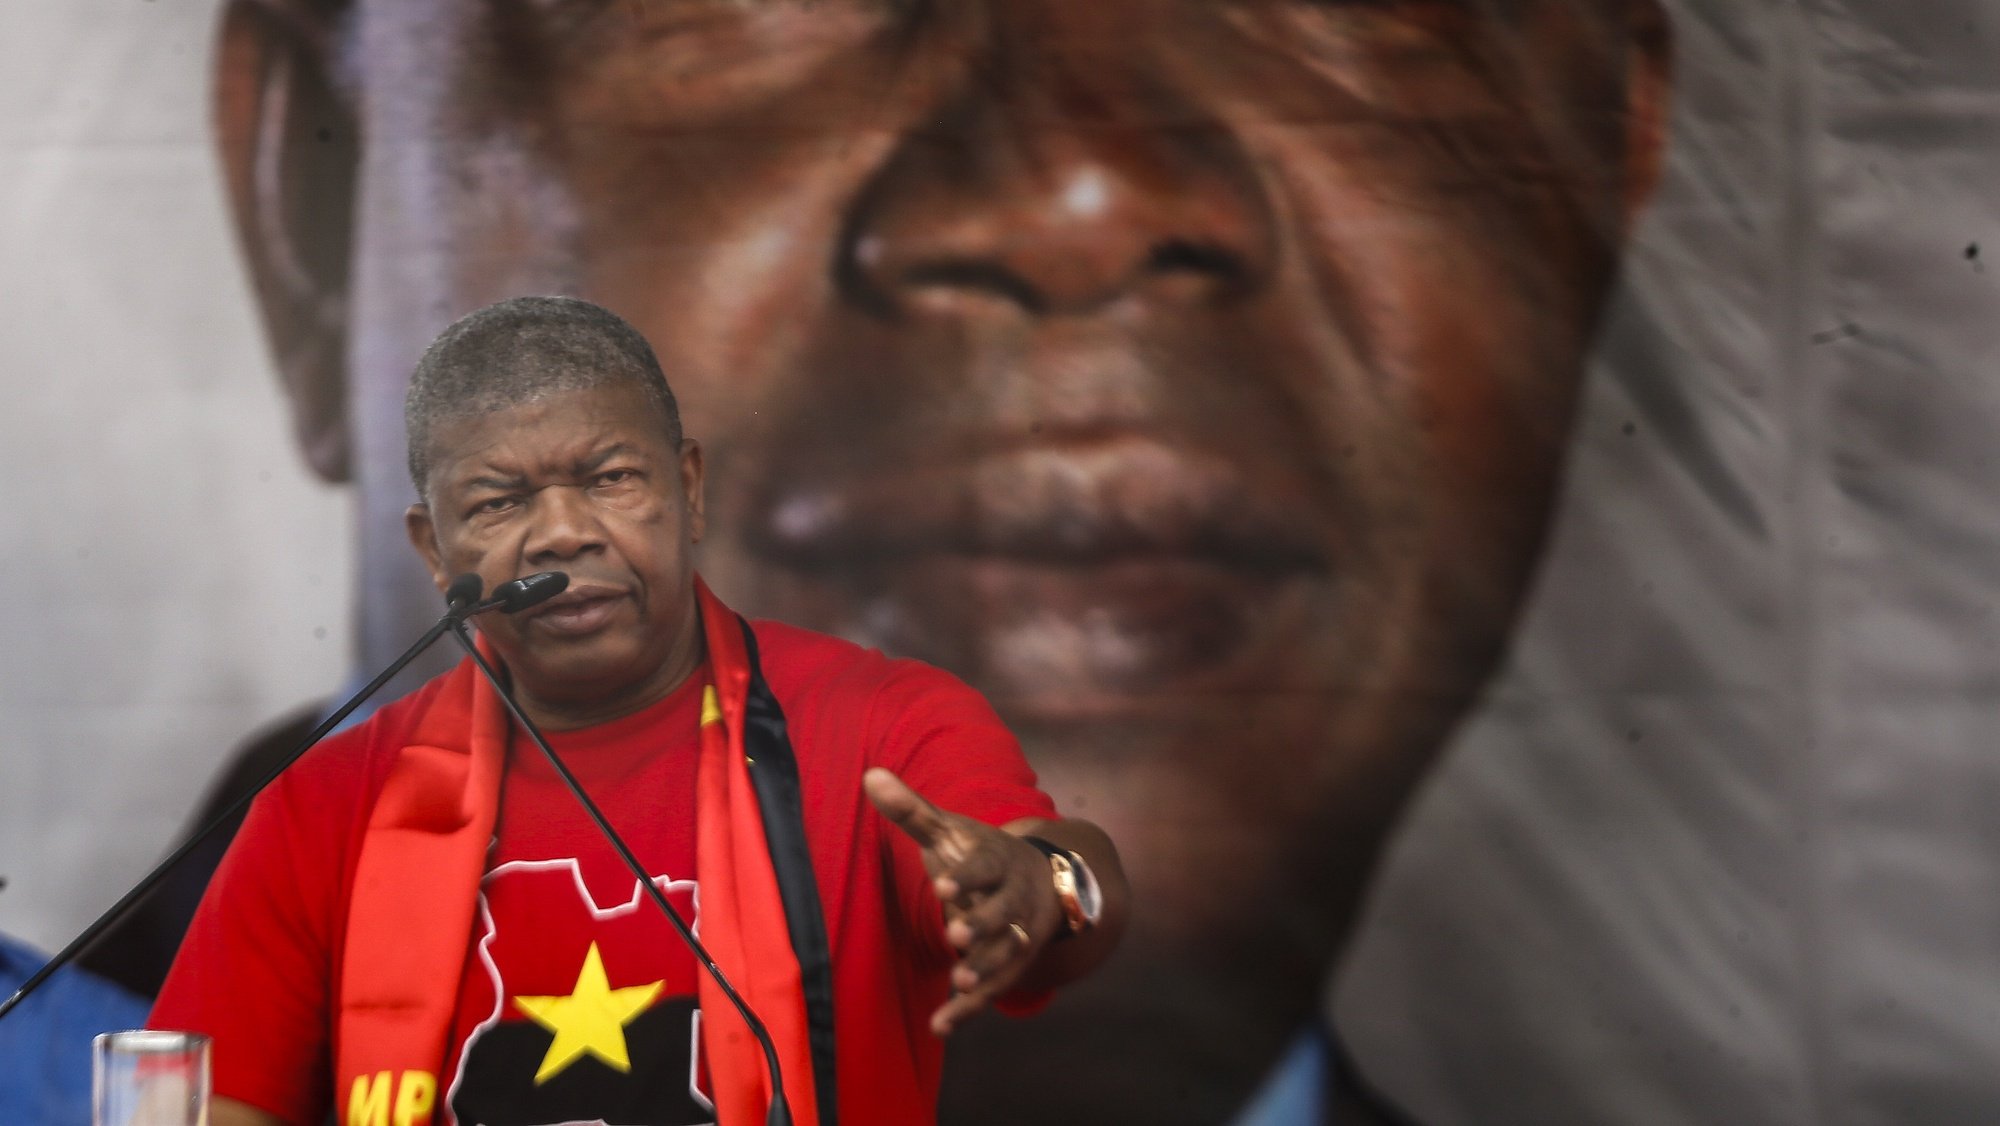 Ato de abertura da campanha do Movimento Popular de Libertação de Angola (MPLA) com vista às eleições gerais de 24 de agosto, com a presença de João Lourenço, em Camama, Luanda. AMPE ROGÉRIO/LUSA